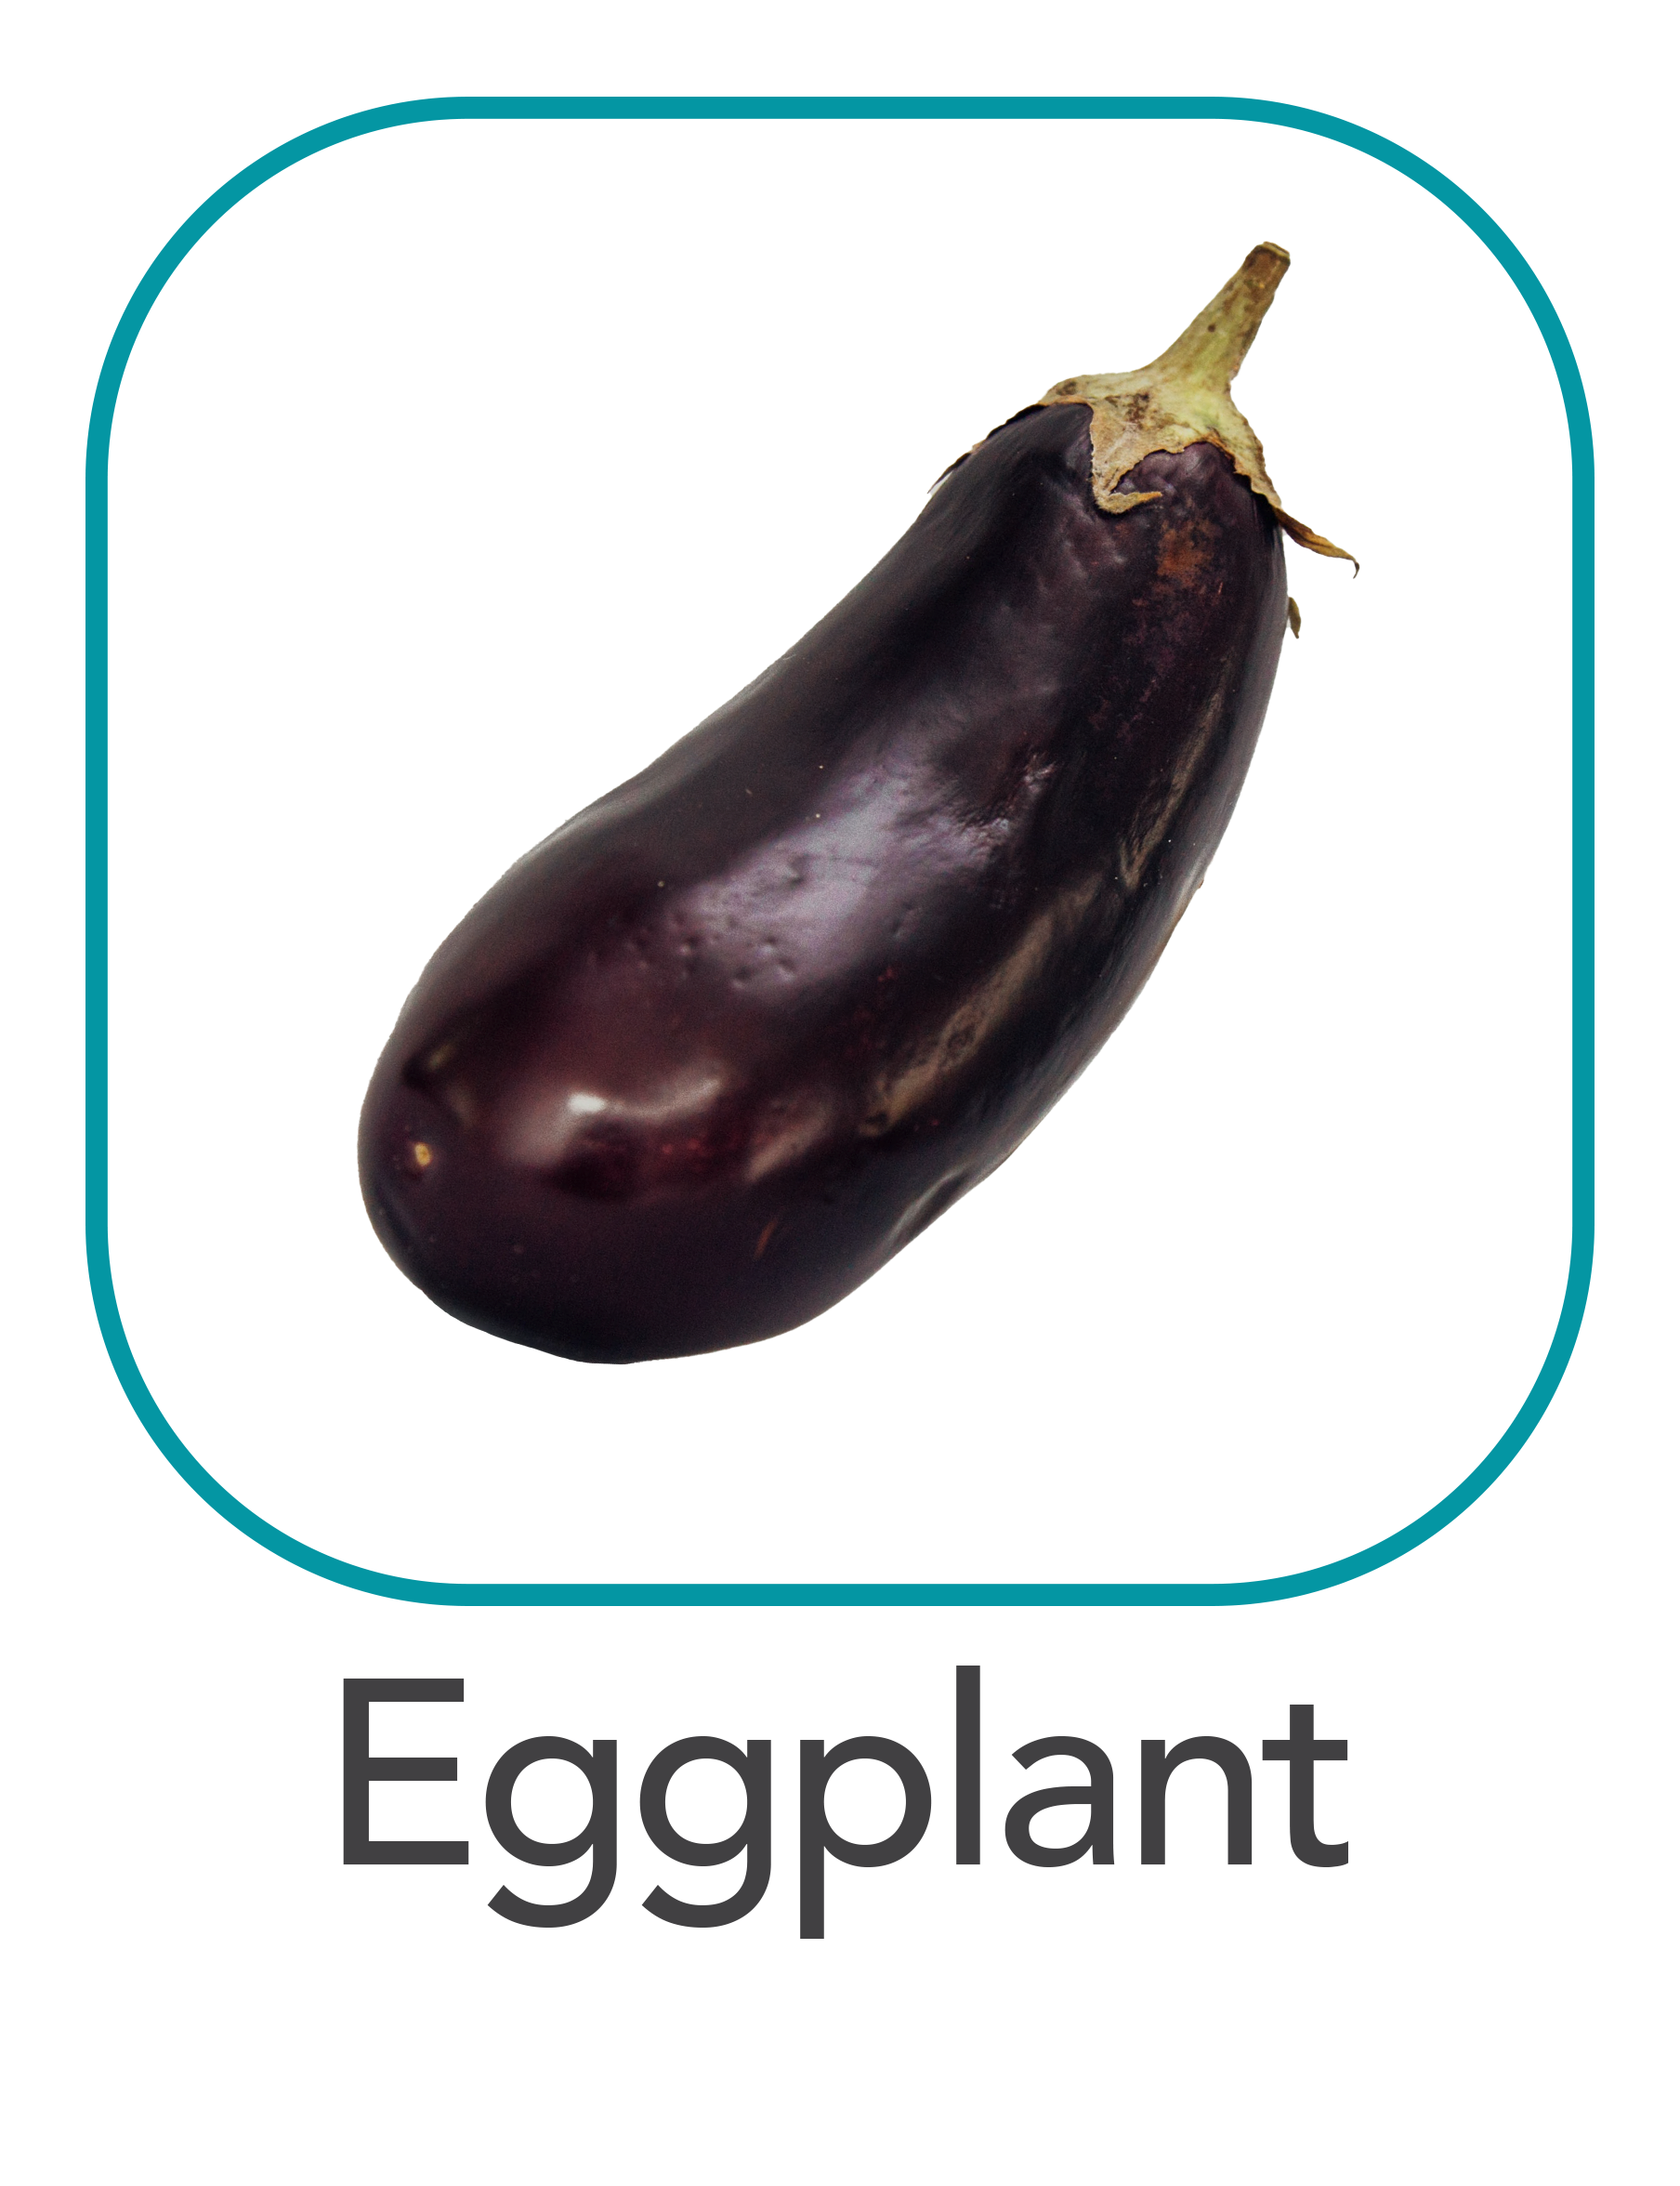 eggplant_web.png